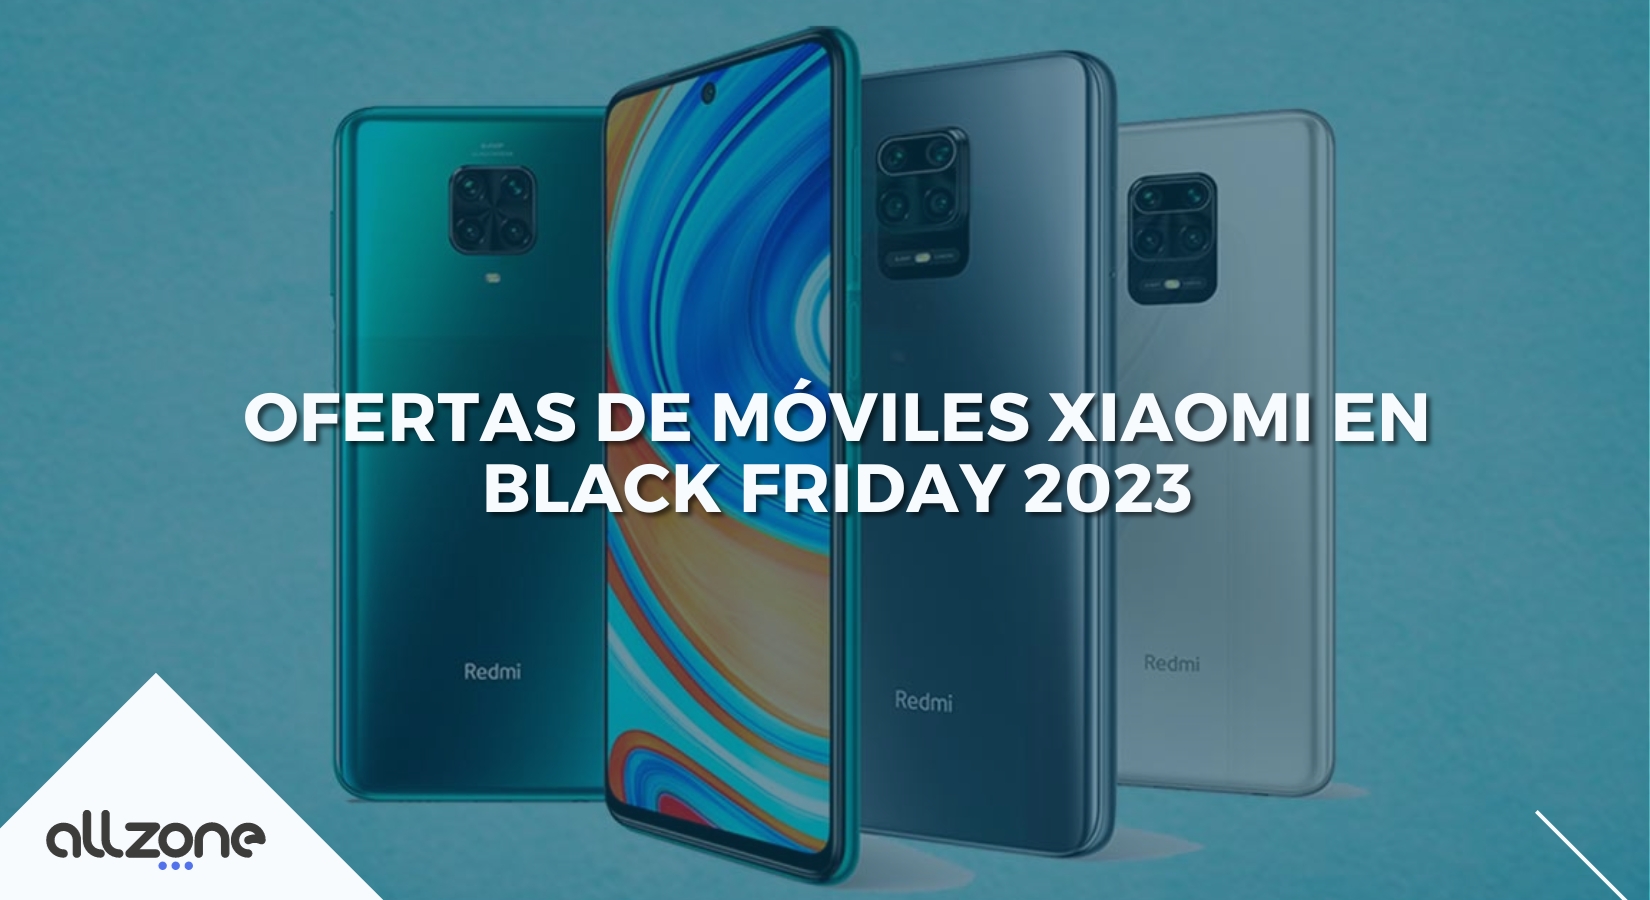 Ofertas de móviles Xiaomi en Black Friday 2023 - AllZone